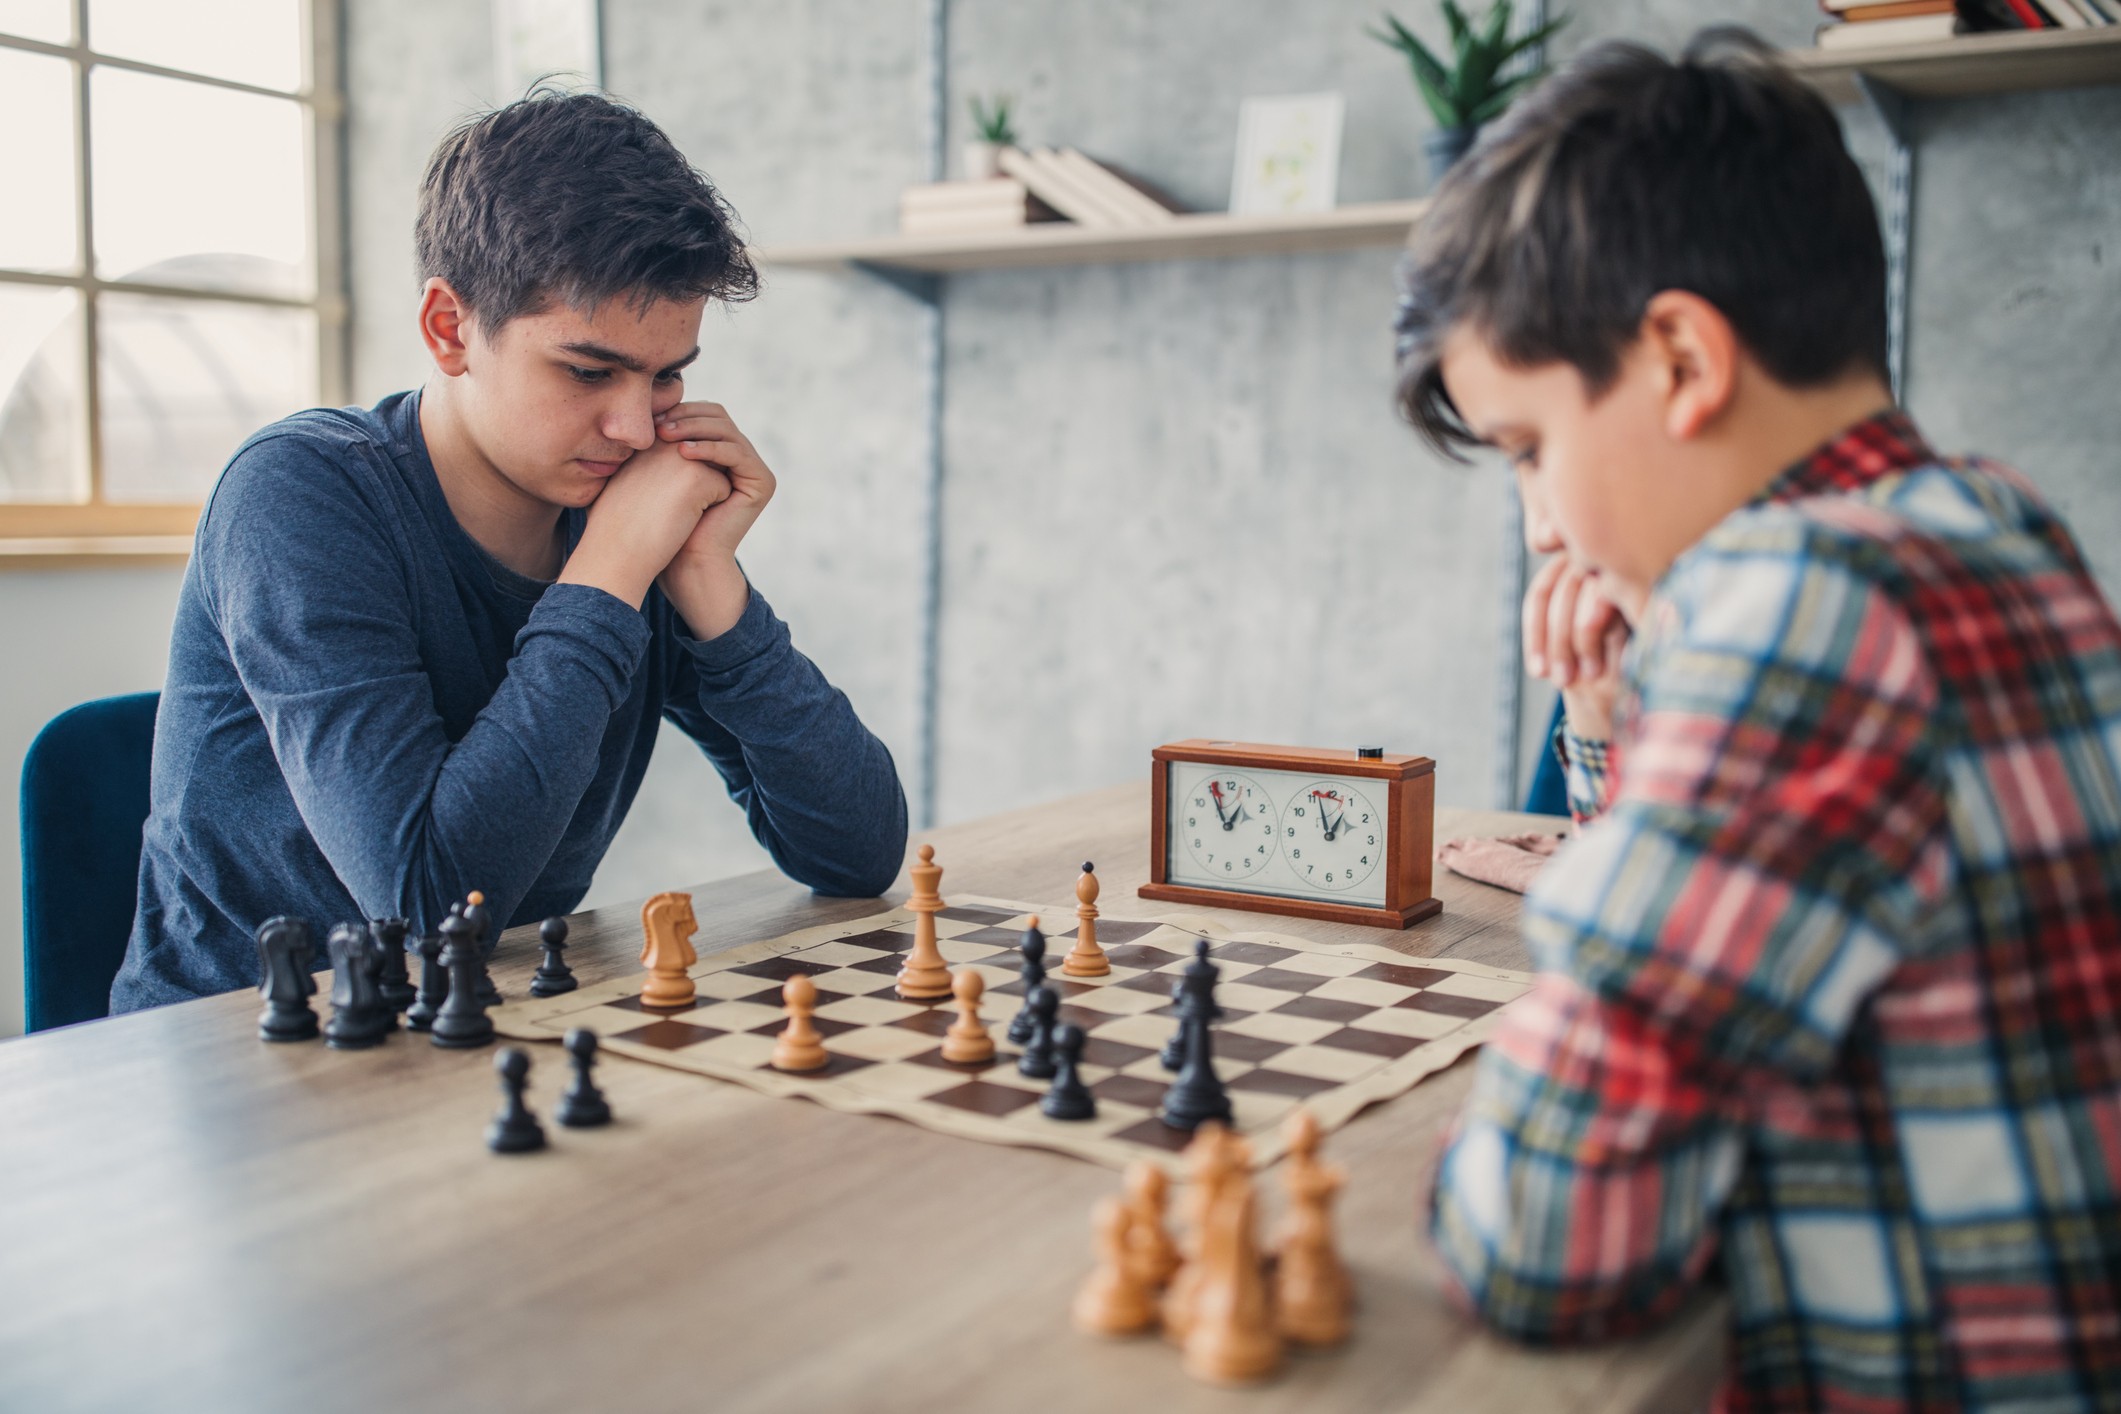 Armênia torna ensino de xadrez obrigatório nas escolas - BBC News Brasil